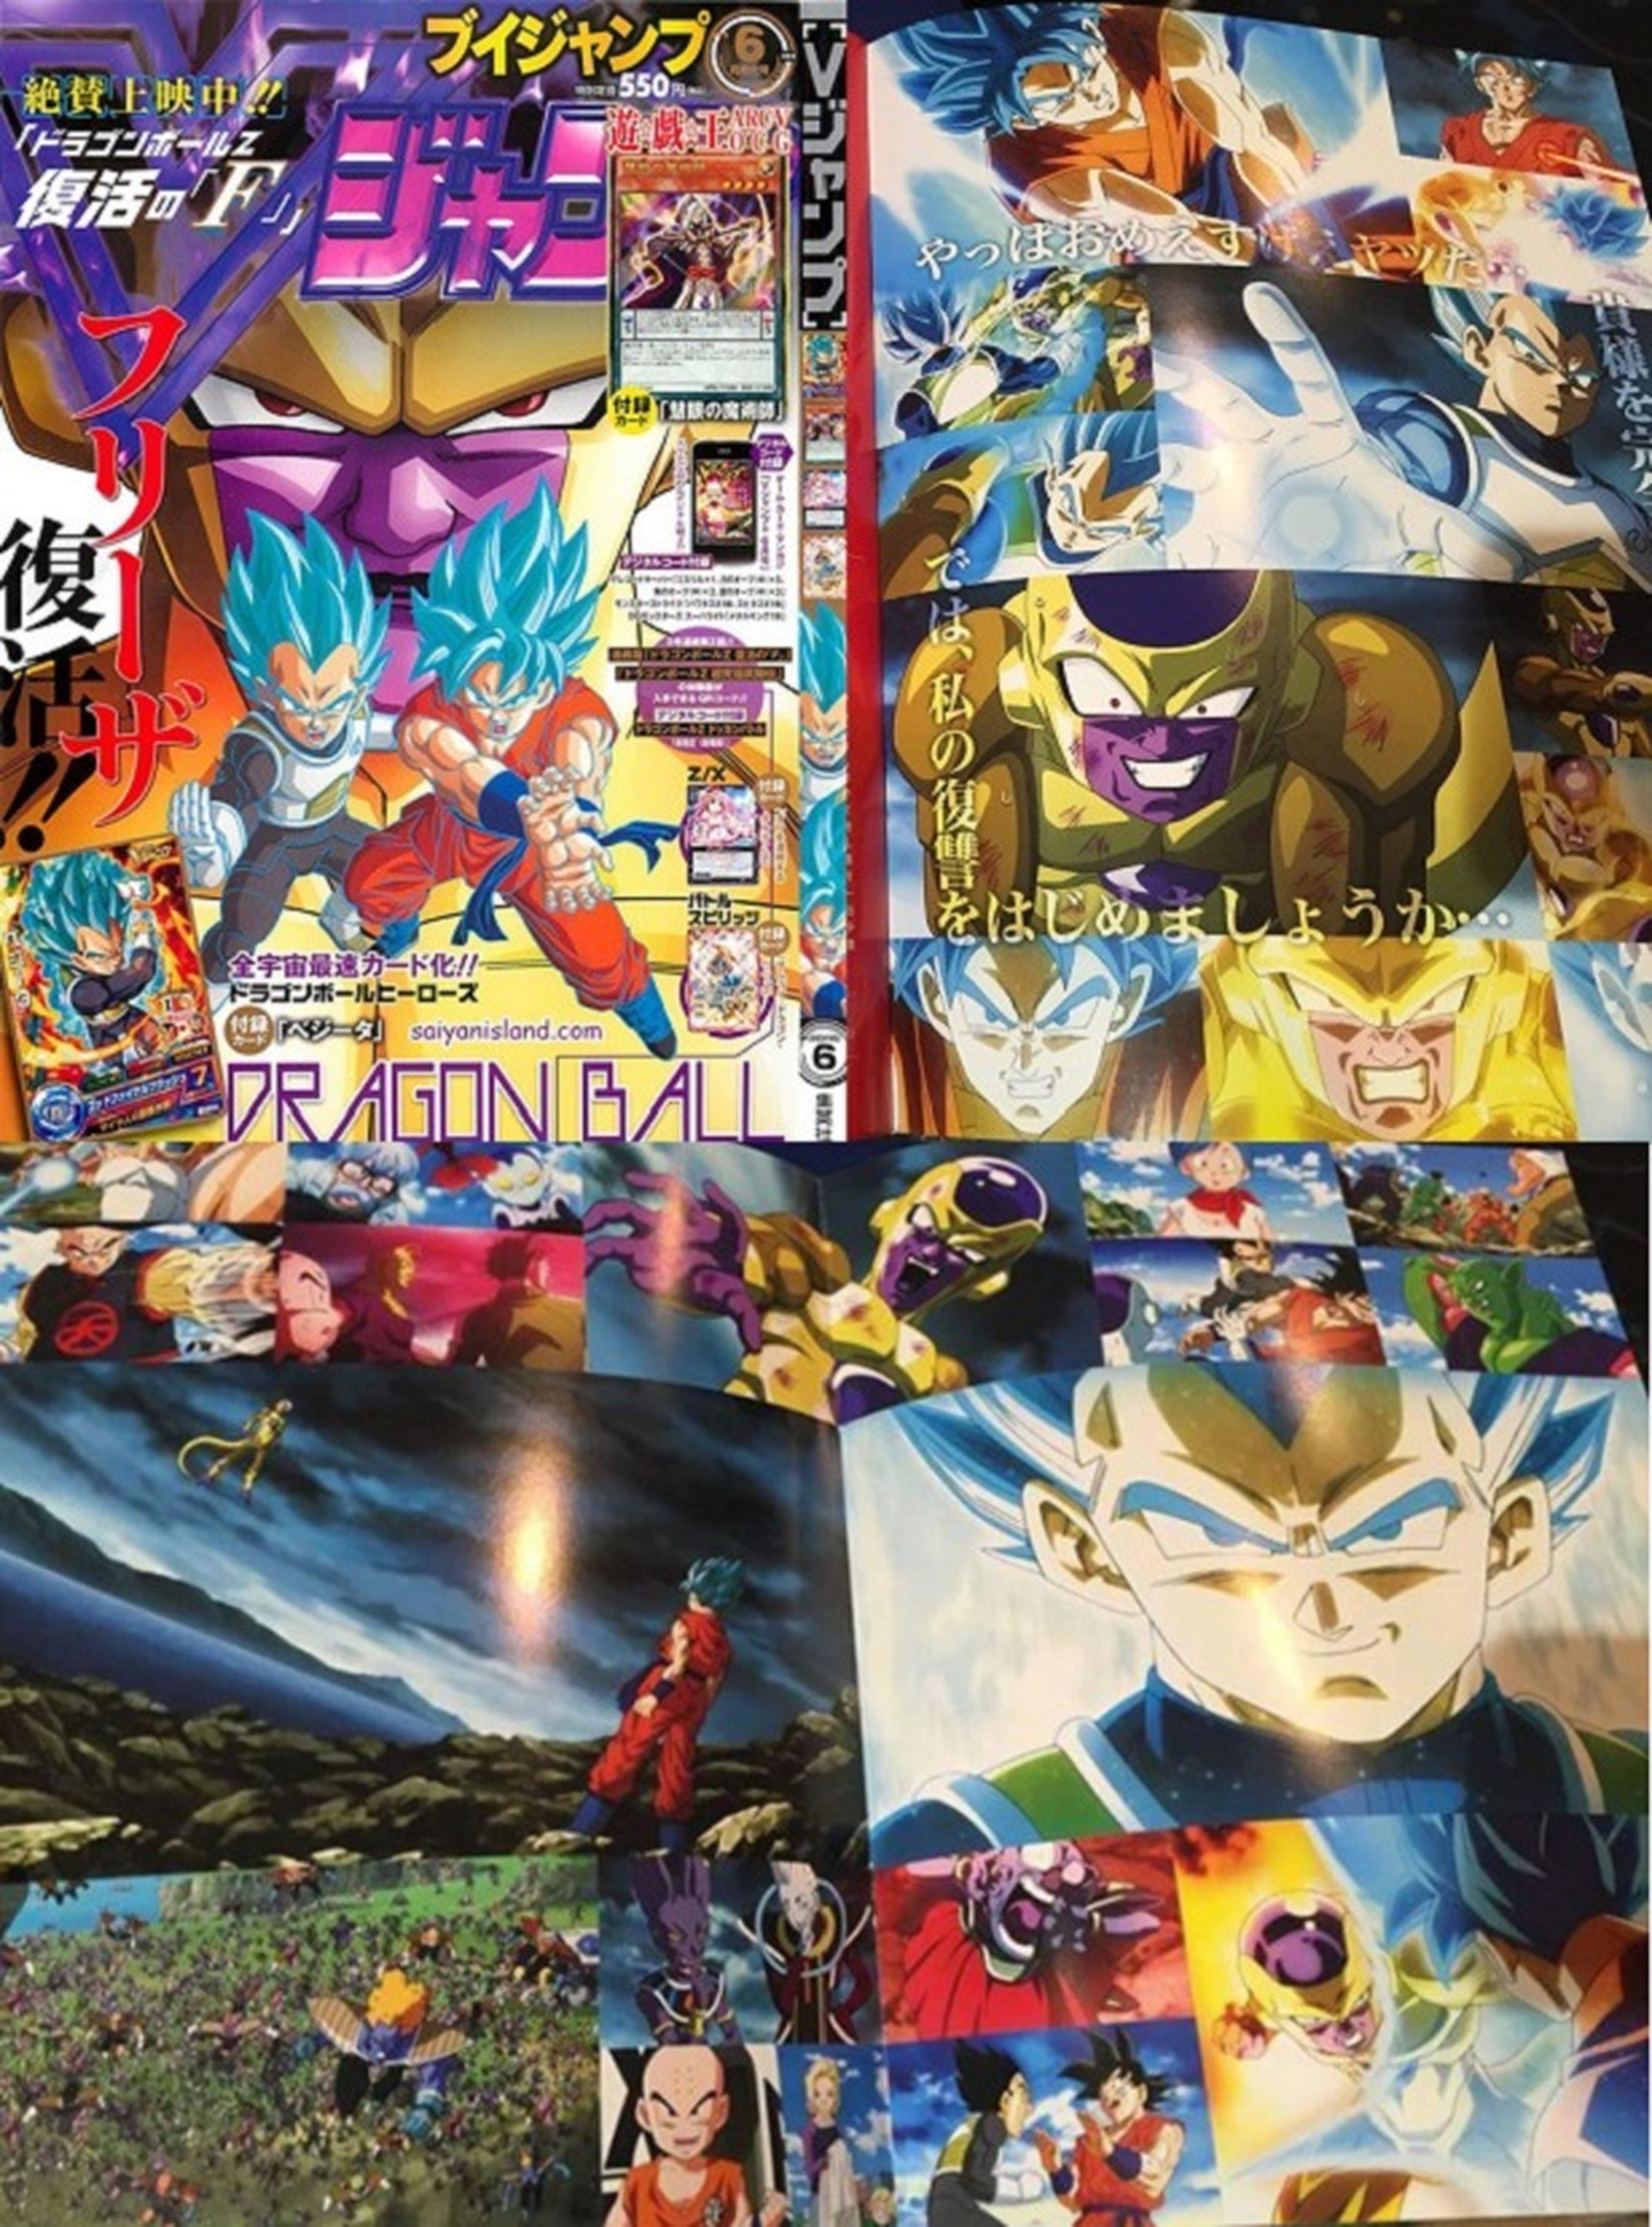 Dragon Ball Z: Fukkatsu no F: imágenes de la transformación de Vegeta